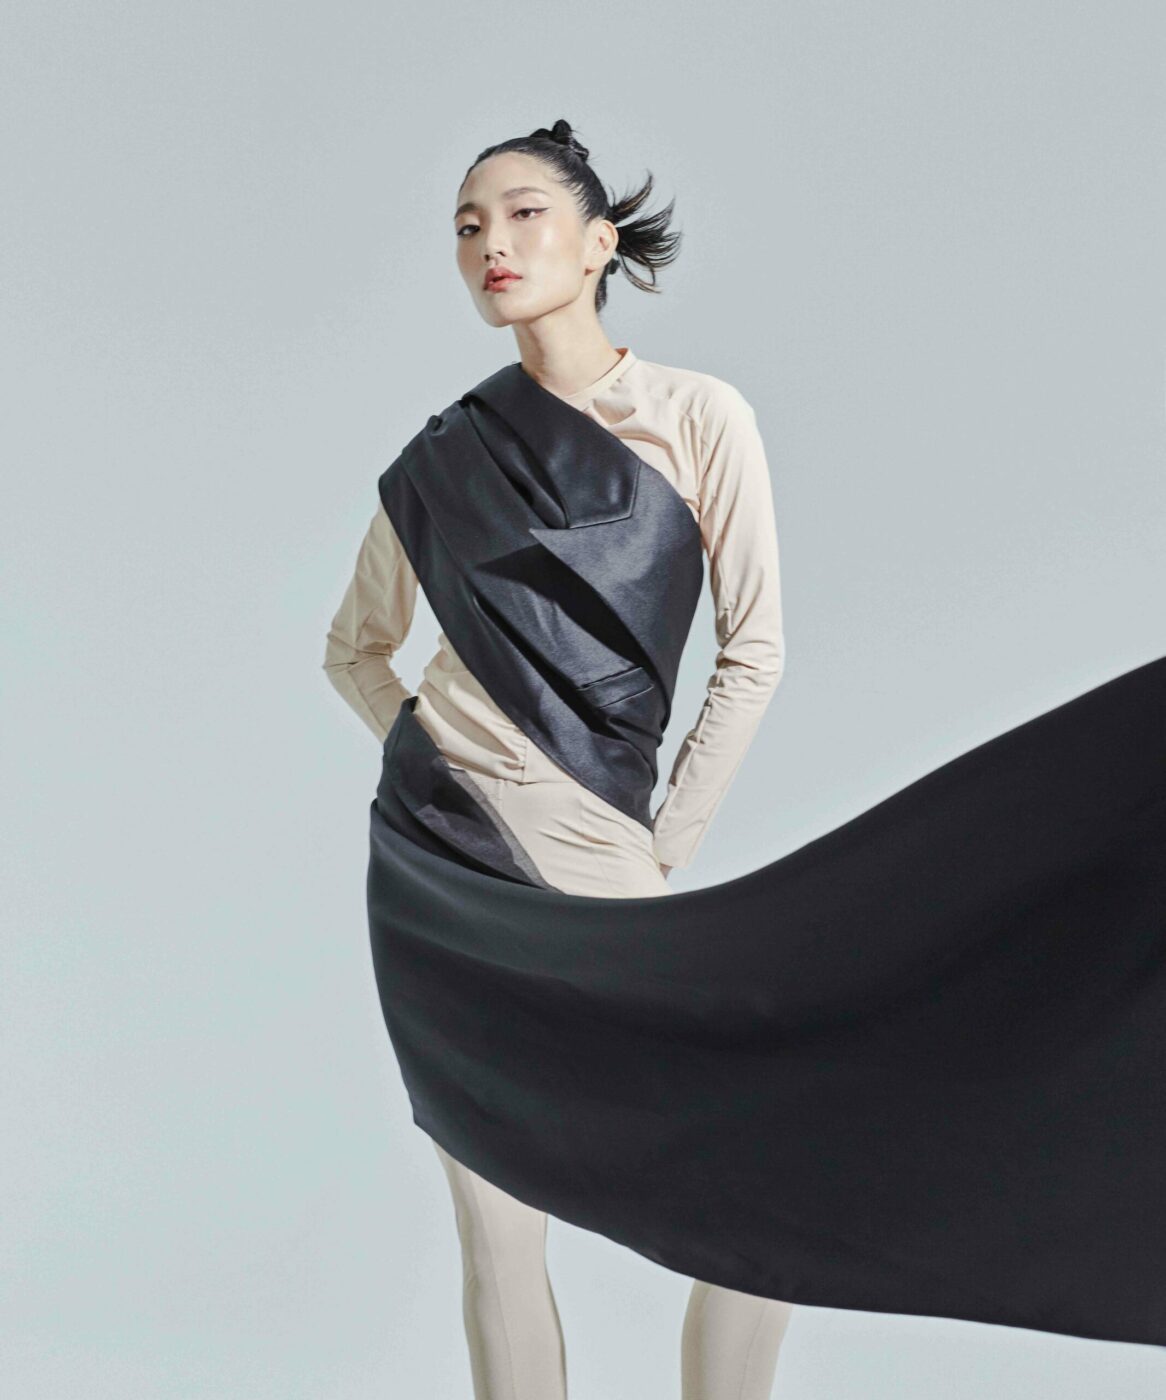 may siu singapore basic models female fashion